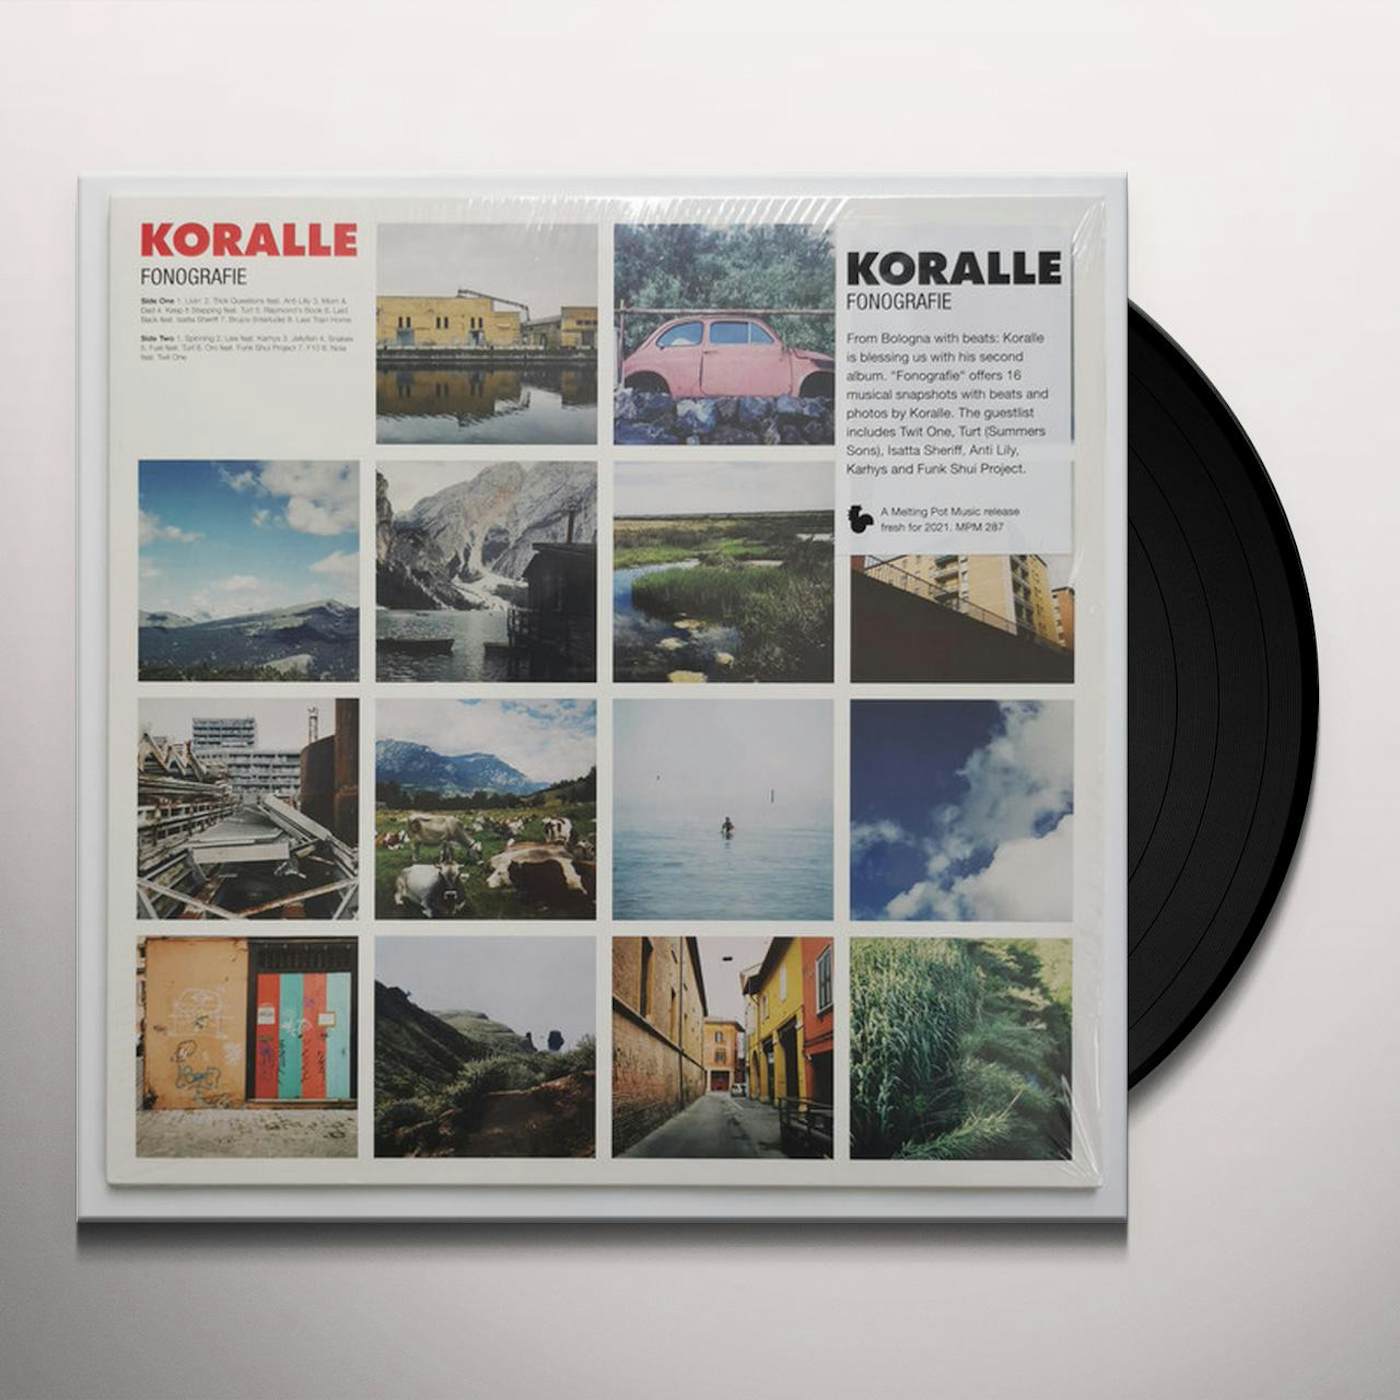 Koralle Fonografie Vinyl Record